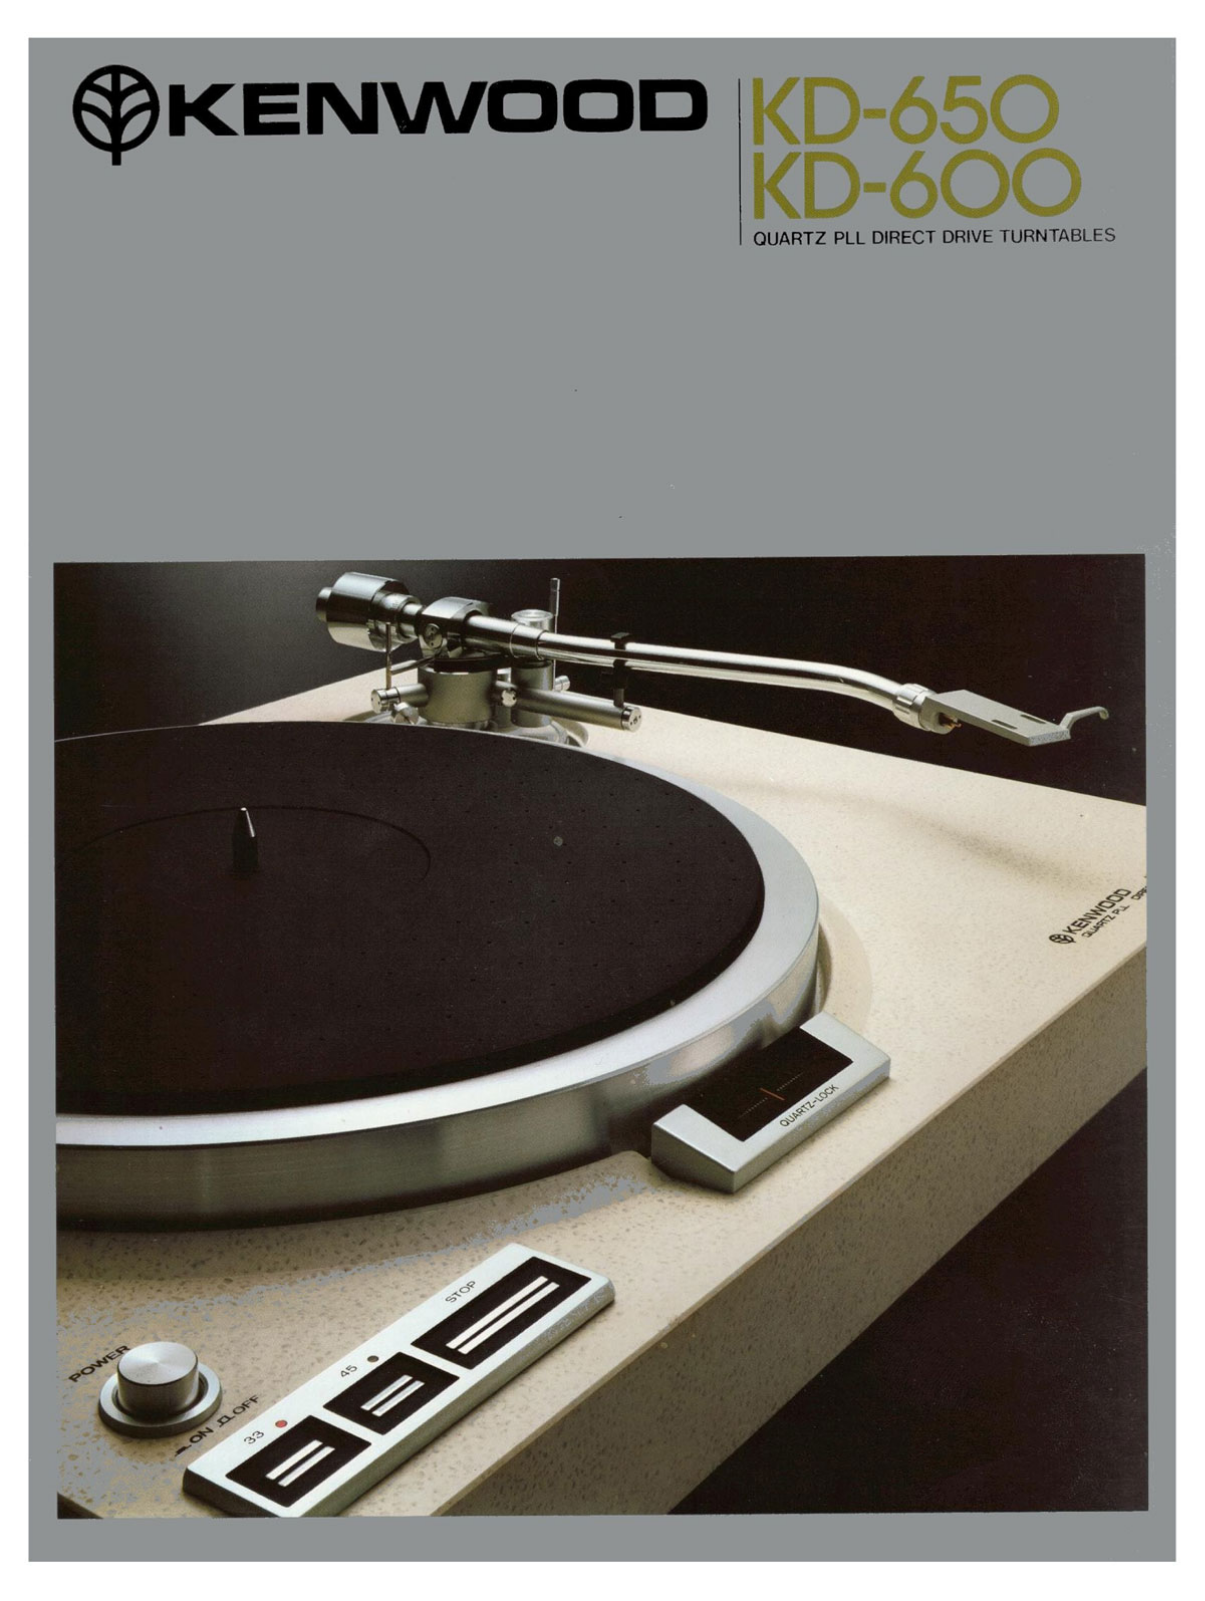 Kenwood KD-600, KD-650 Brochure